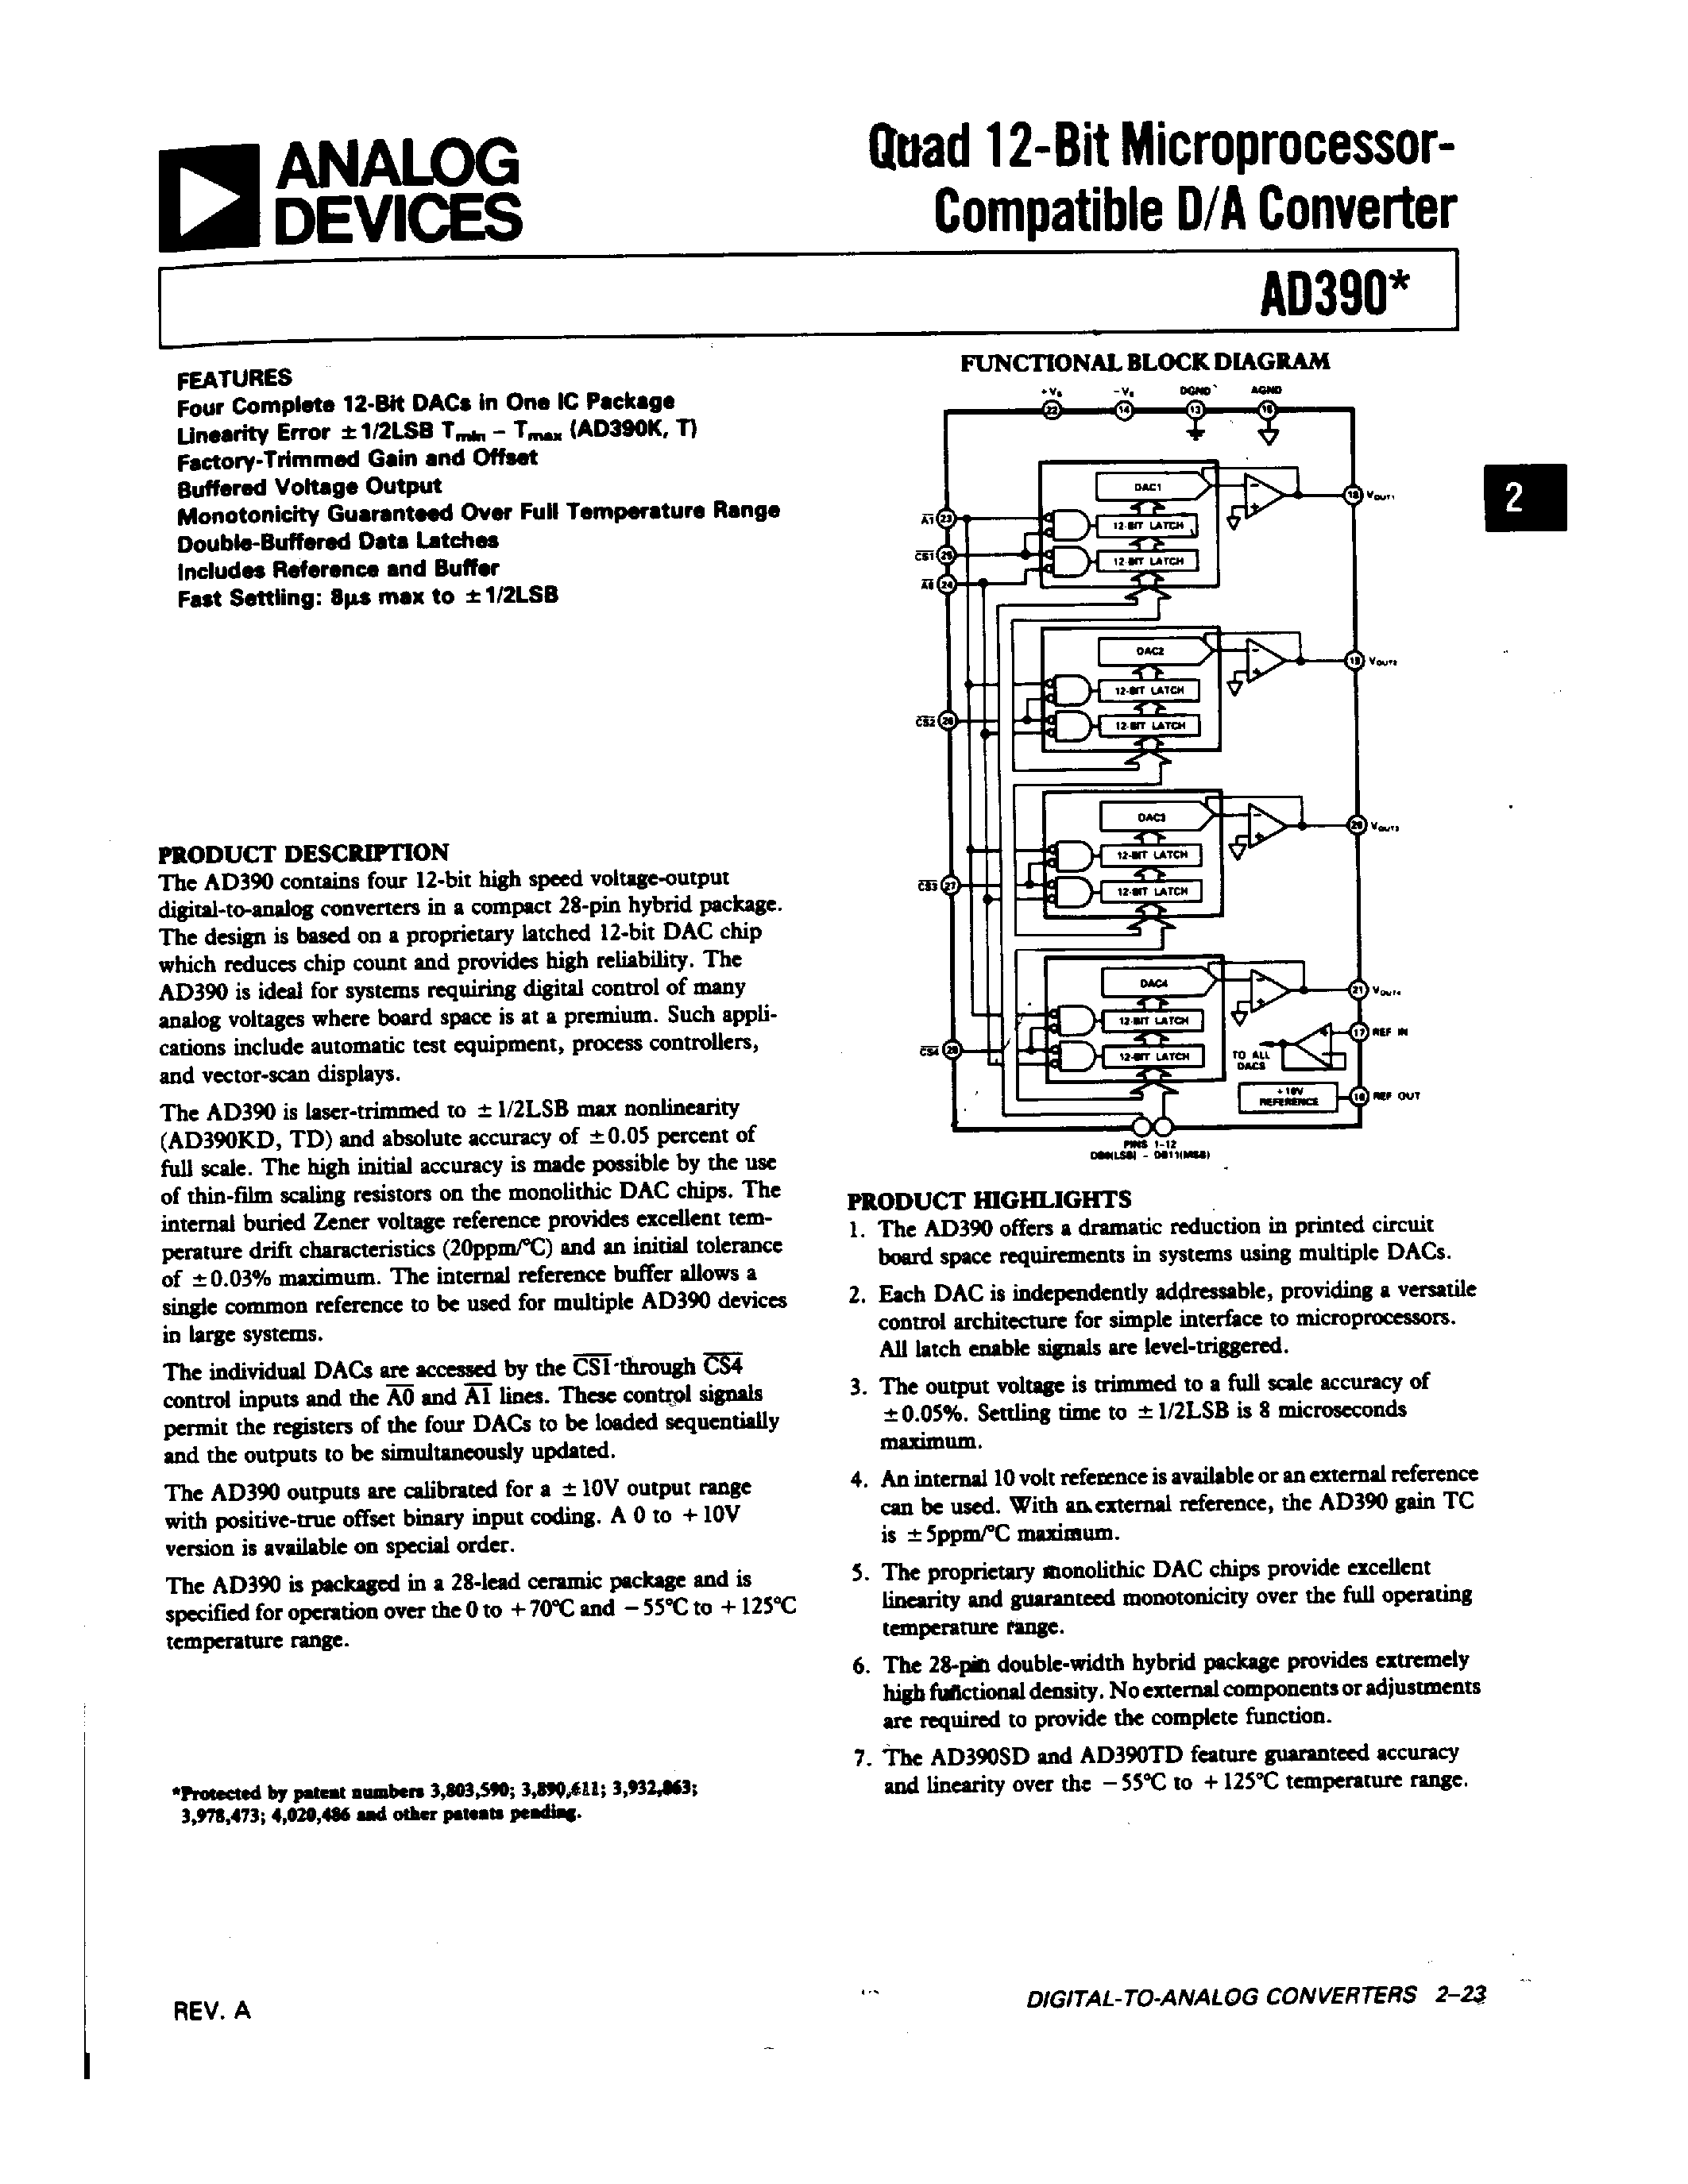 Даташит AD390 - Quad 12-Bit Microprocessor-Compatible D/A Converter страница 1